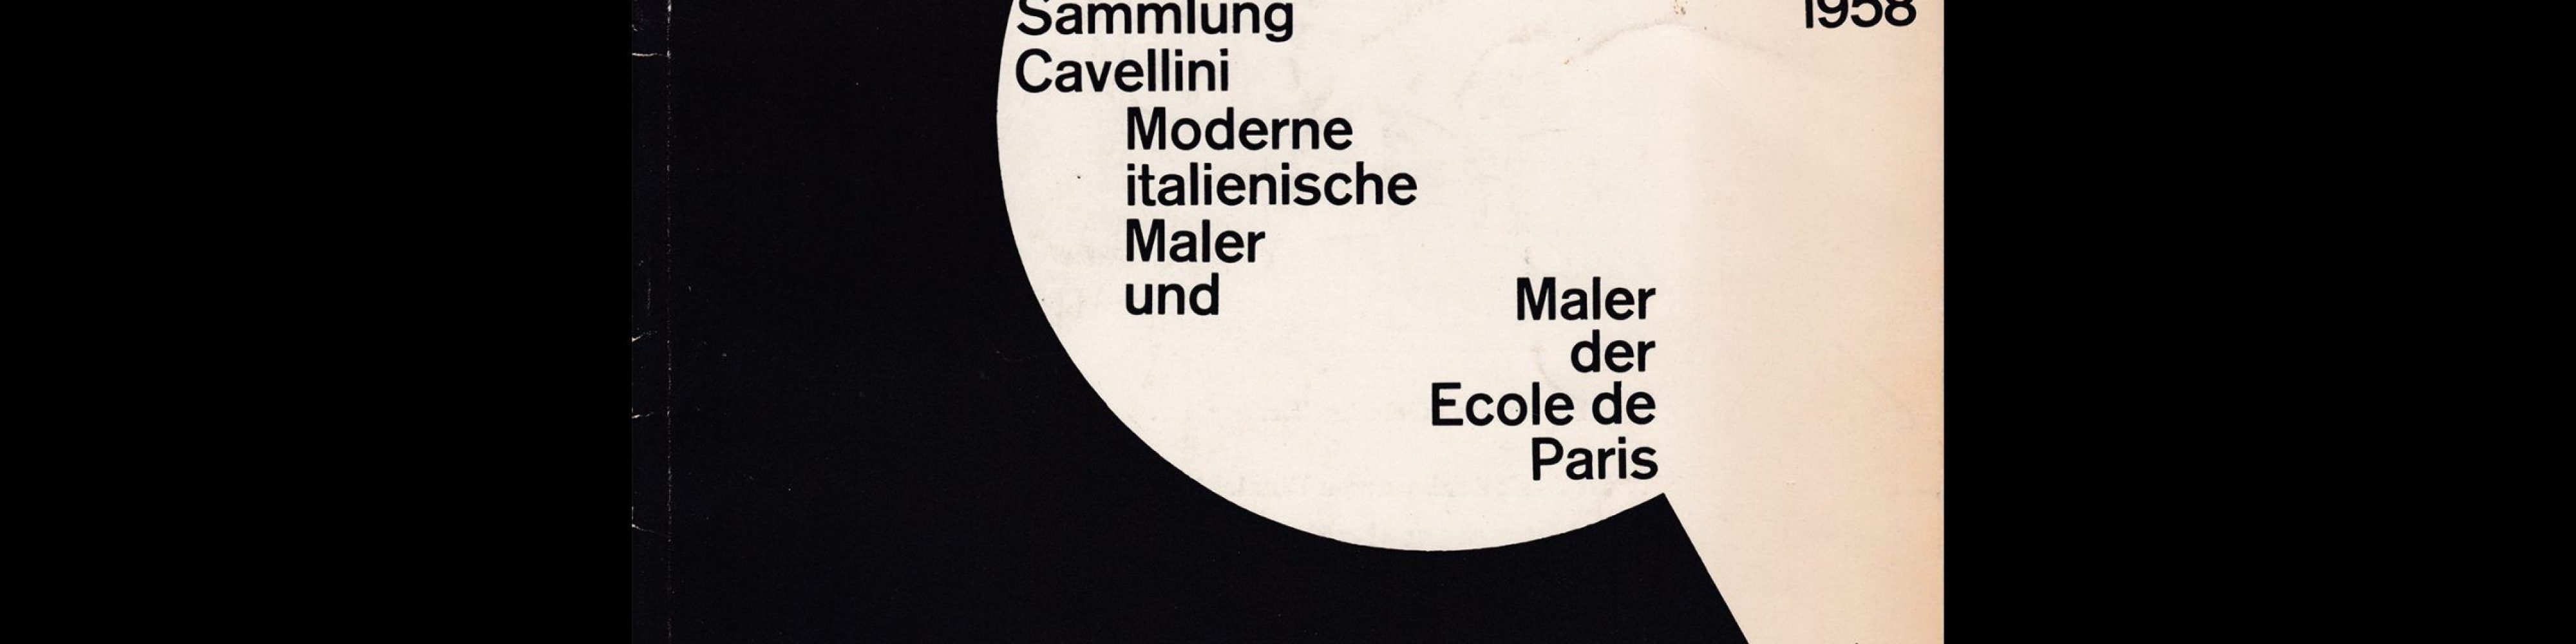 Sammlung Cavellini Moderne italienische Maler und Maler der Ecole de Paris, Kunsthalle Basel, 1958 designed by Armin Hofmann